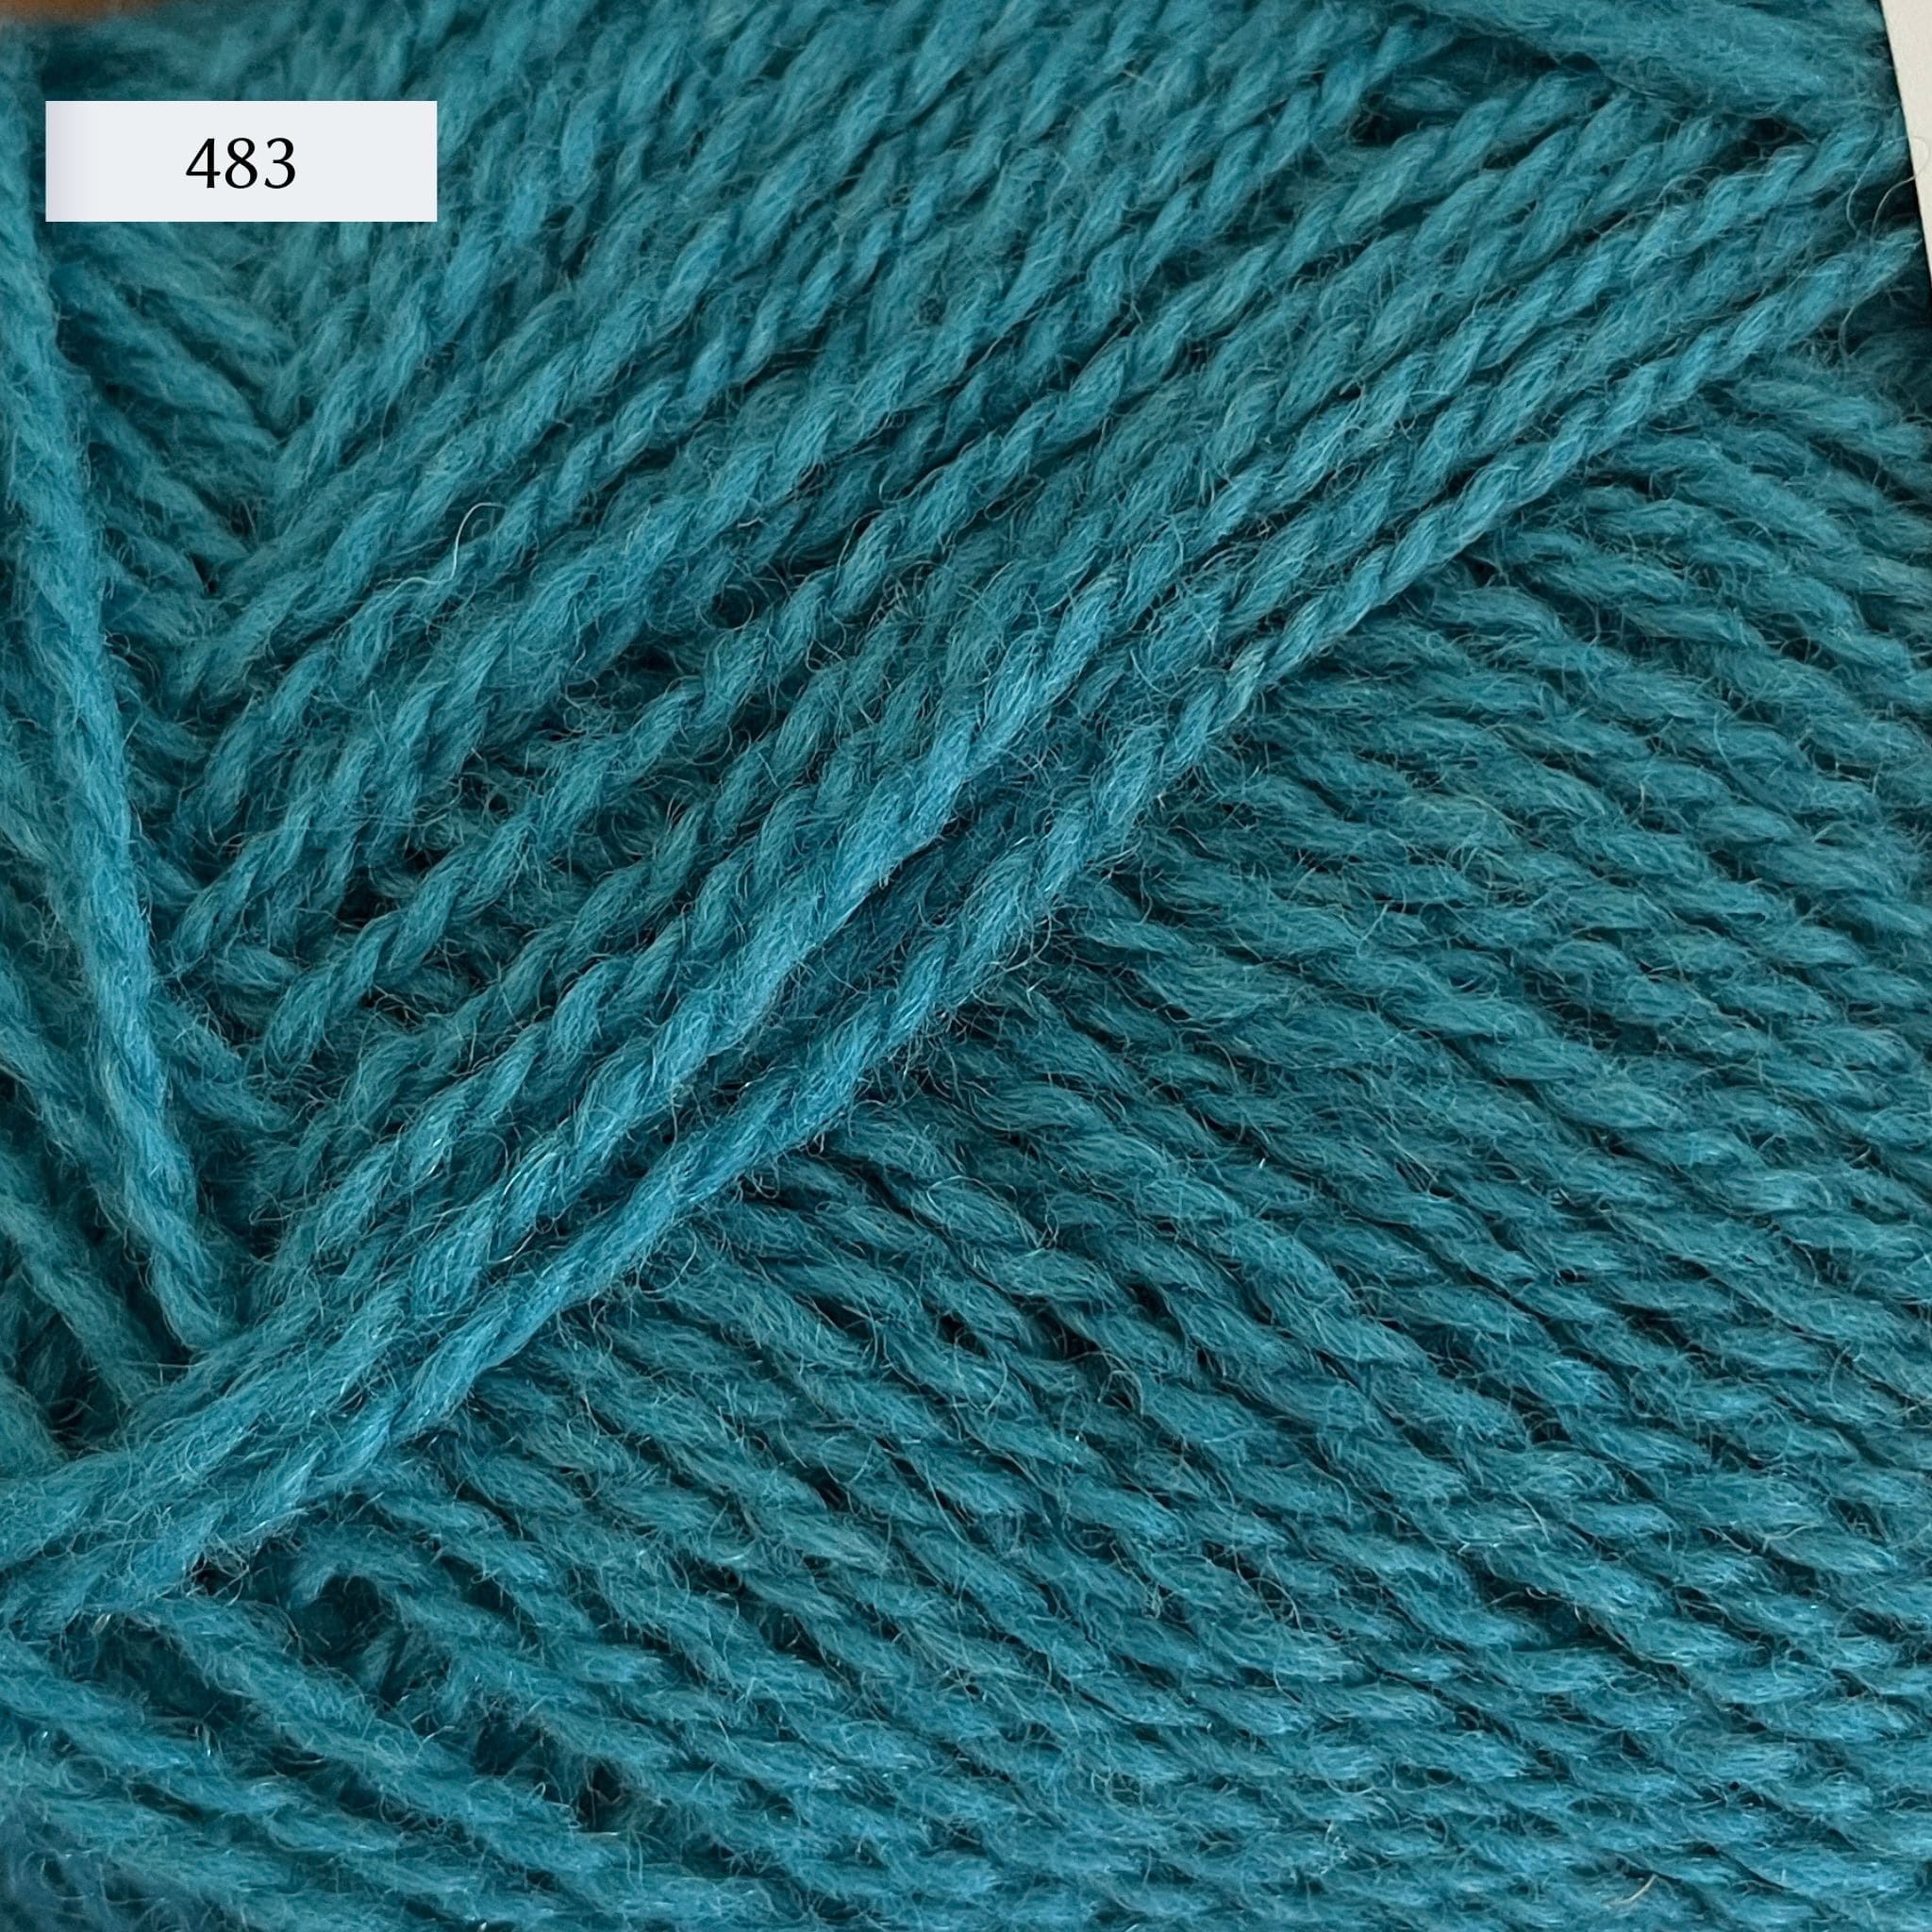 Rauma Finullgarn, a fingering/sport weight yarn, in color 482, a medium teal